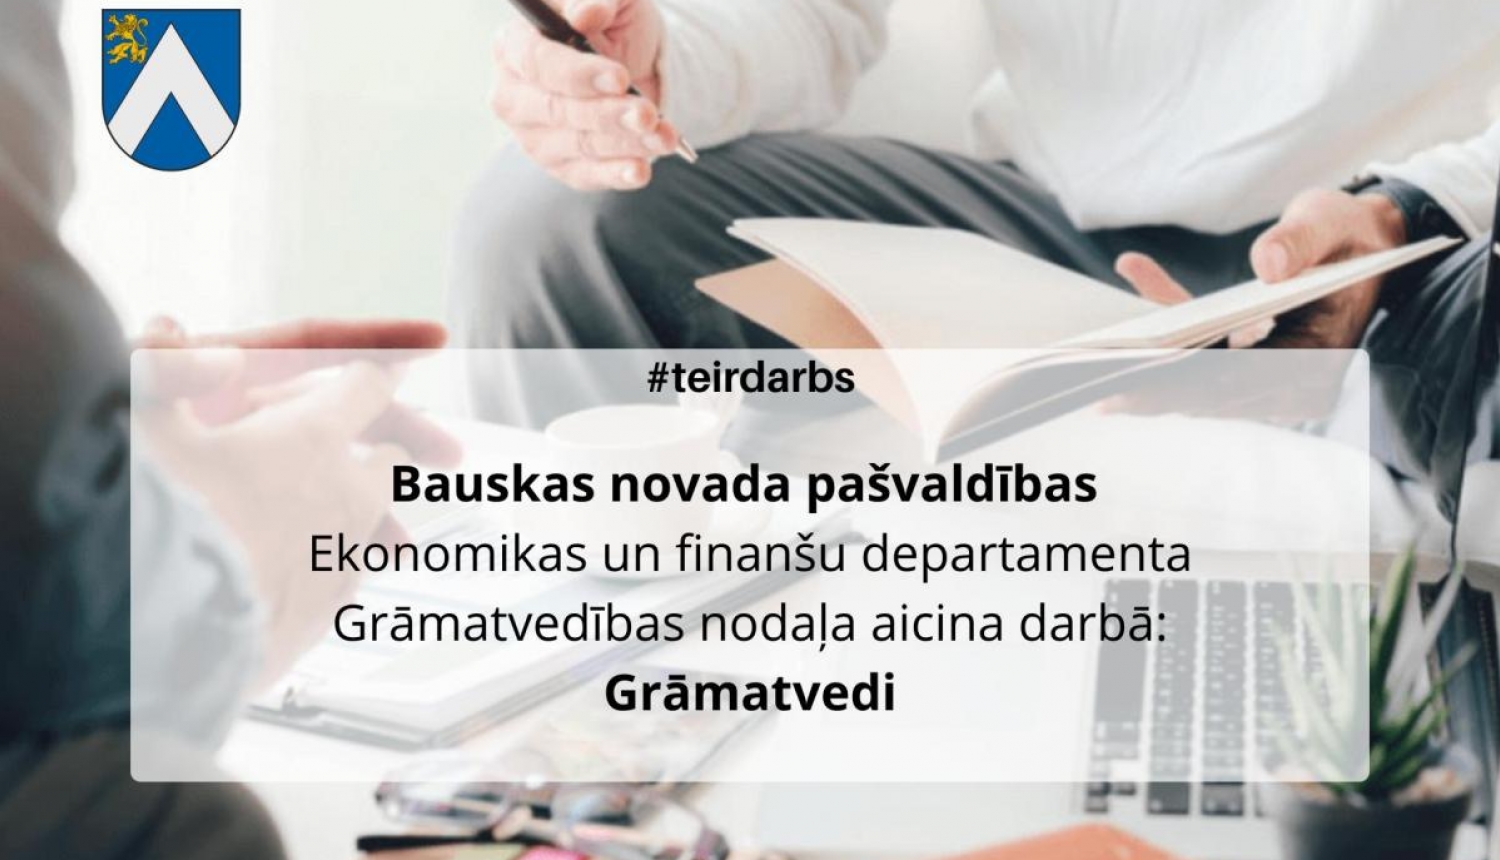 Bauskas novada pašvaldības Ekonomikas un finanšu departamenta Grāmatvedības nodaļa aicina darbā grāmatvedi